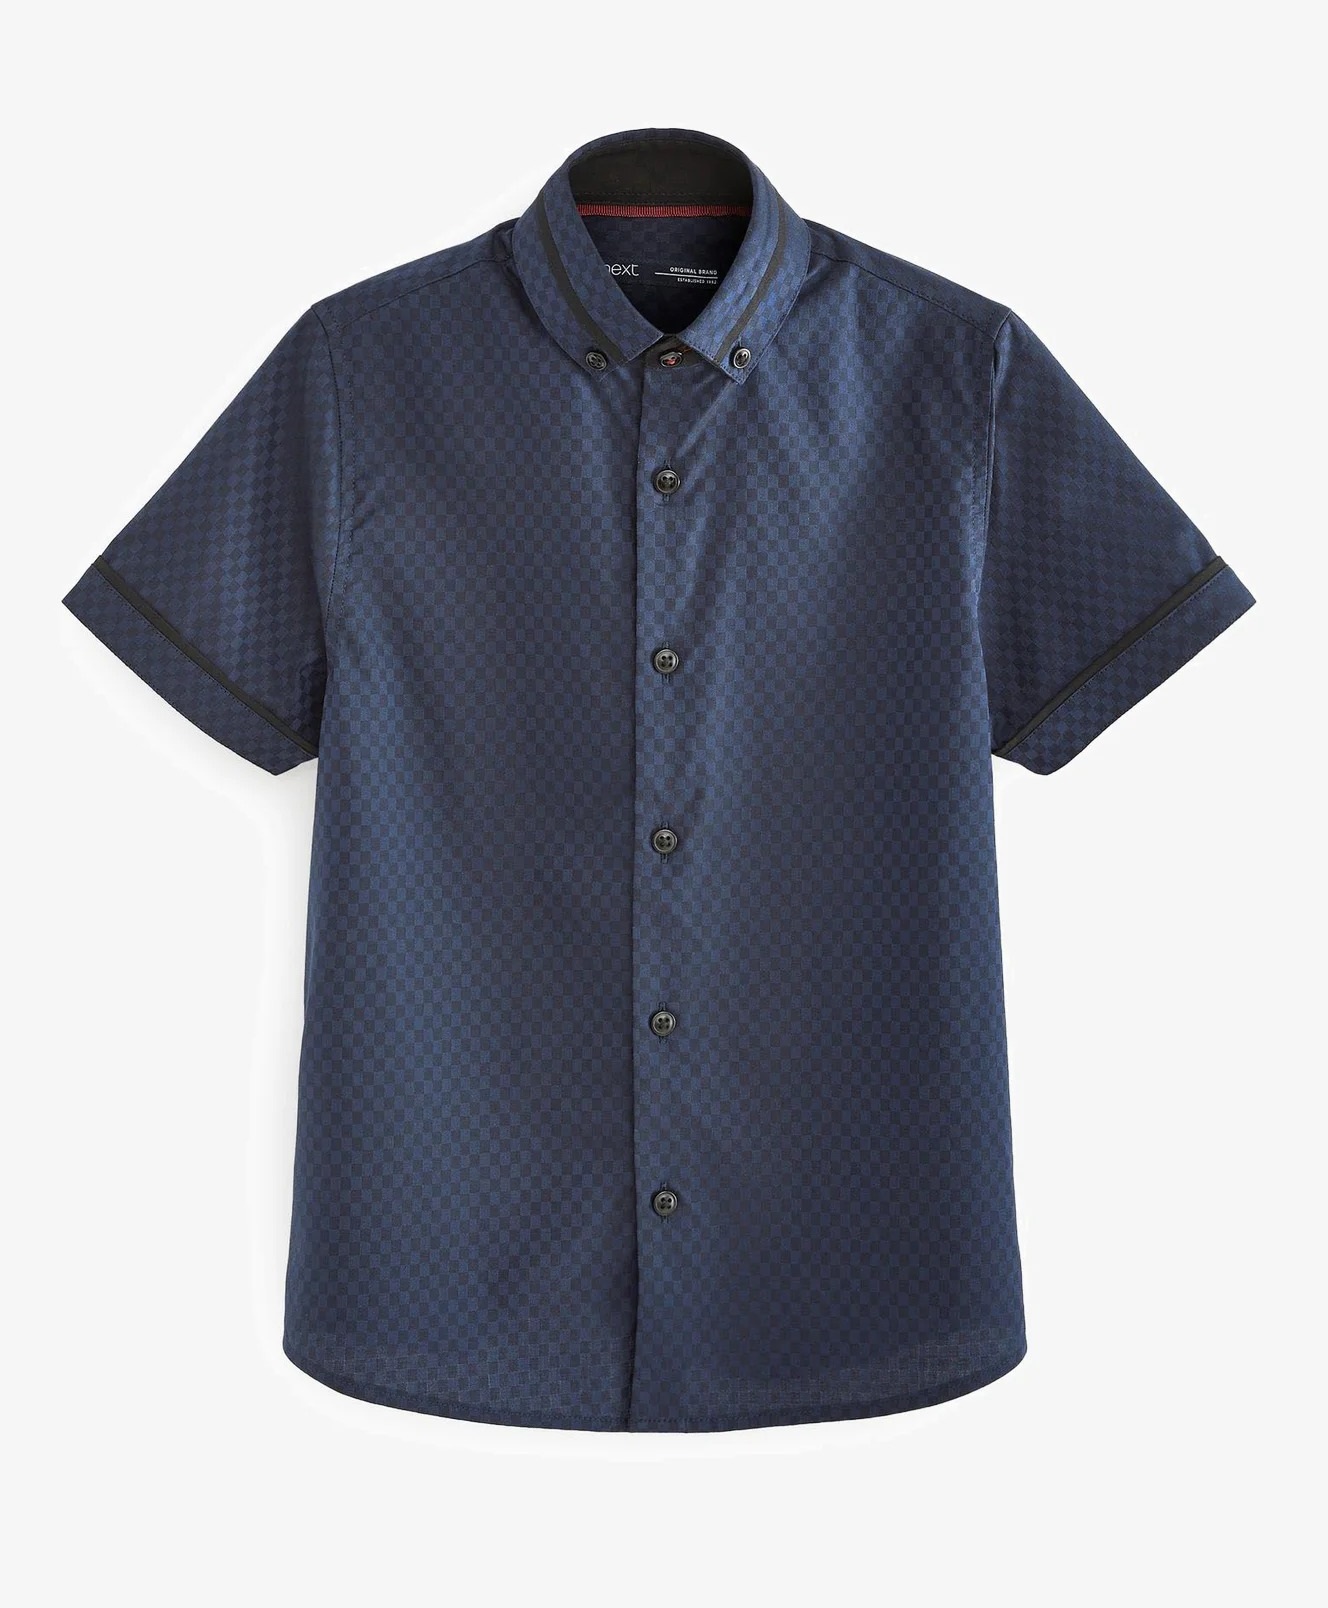 Рубашка Next Short Sleeve Standard, темно-синий футболка для девочек детская хлопковая рубашка с коротким рукавом одежда летний детский однотонный топ футболки детская футболка с буфа